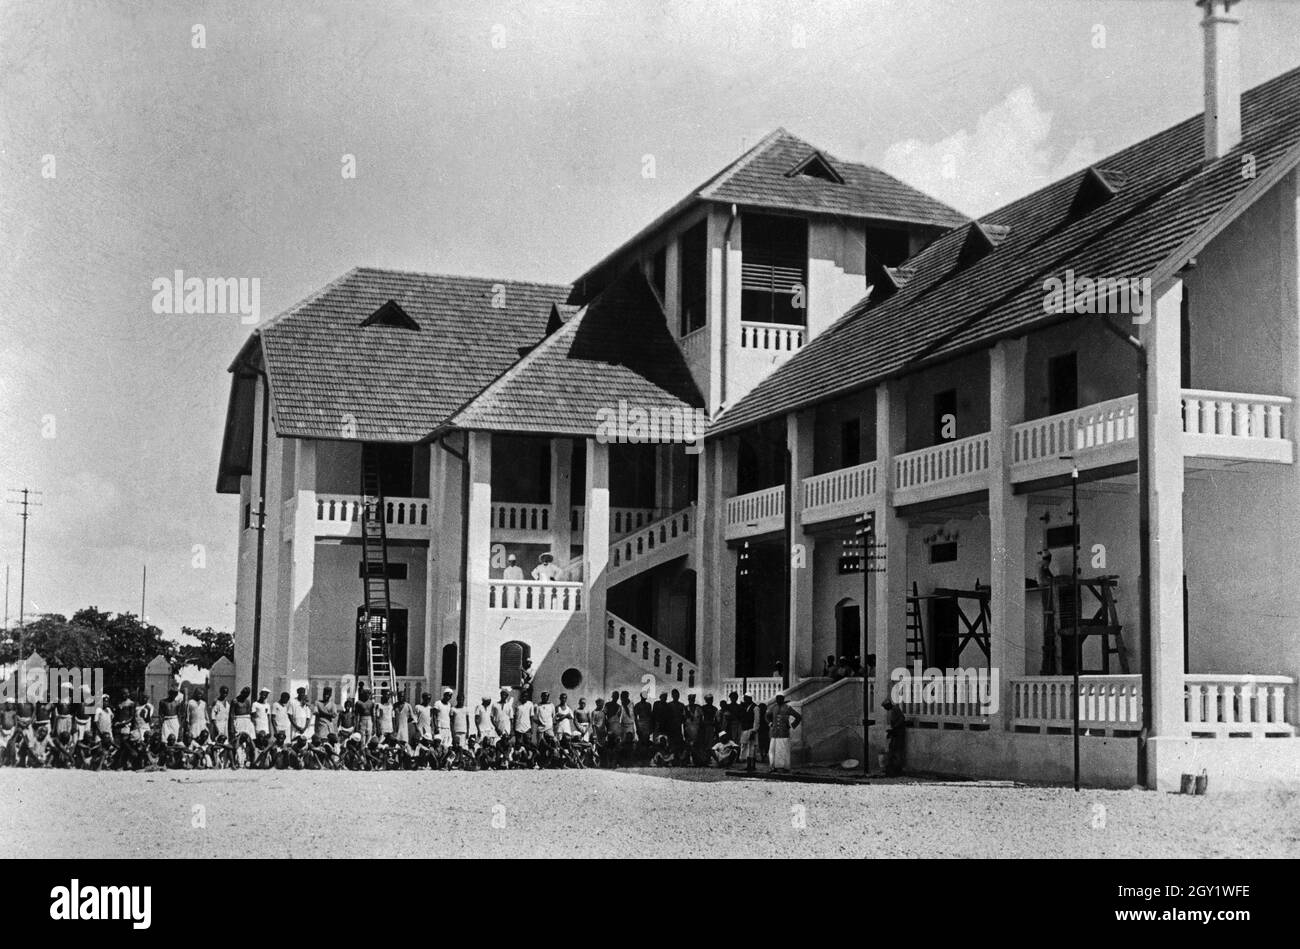 Farmhaus mit Angestellten in Deutsch-Ostafrika, 1900er Jahre. Ferme avec des serviteurs, Afrique de l'est allemande 1900. Banque D'Images